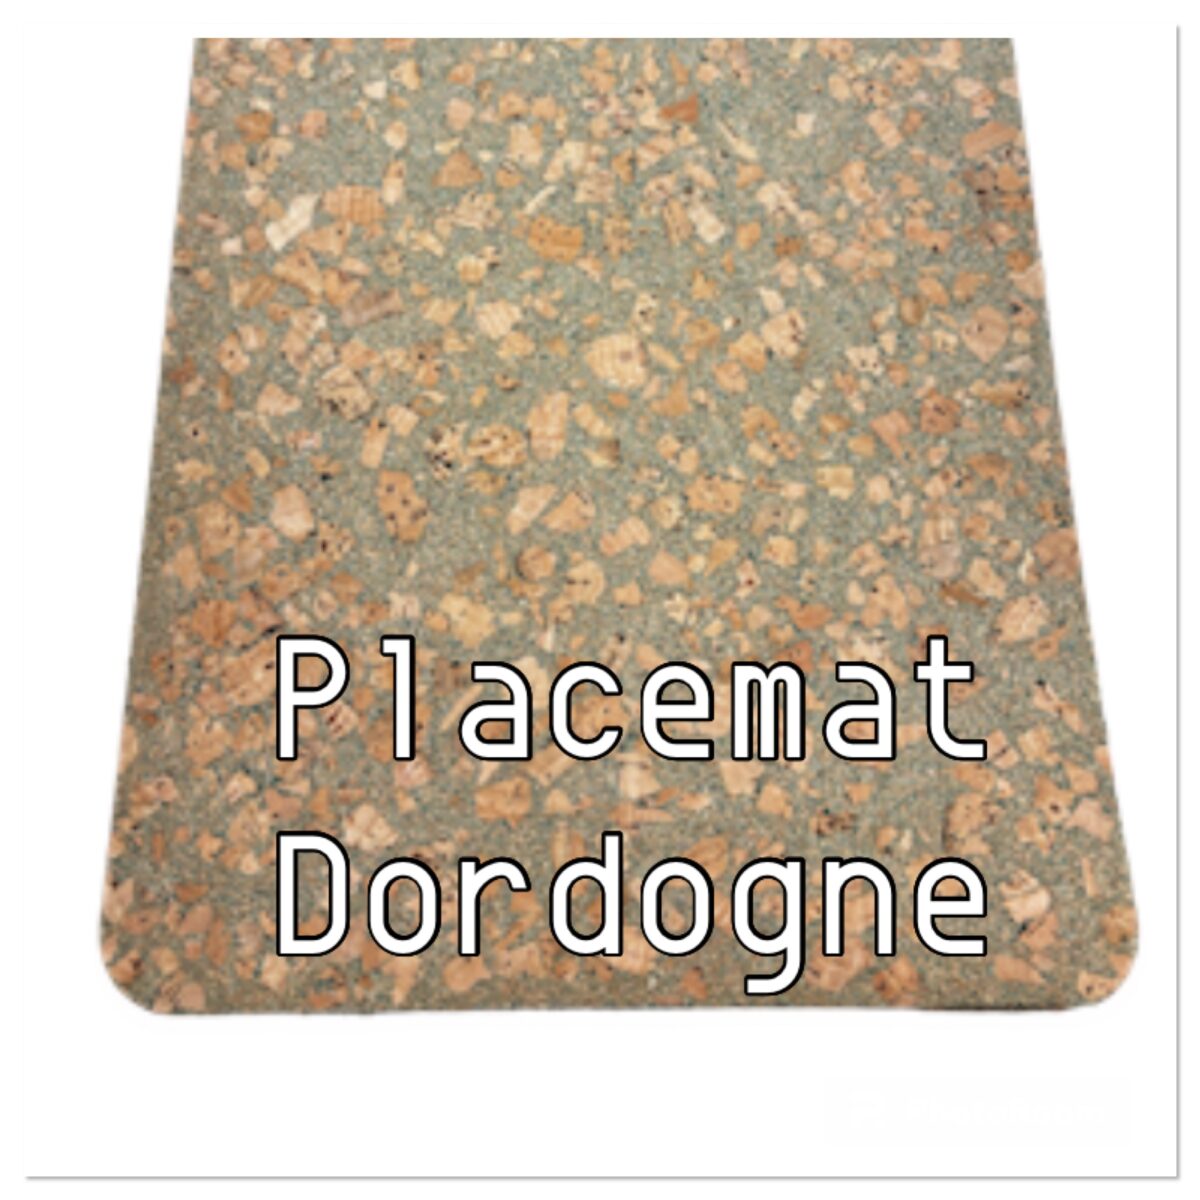 Placemat Dordogne